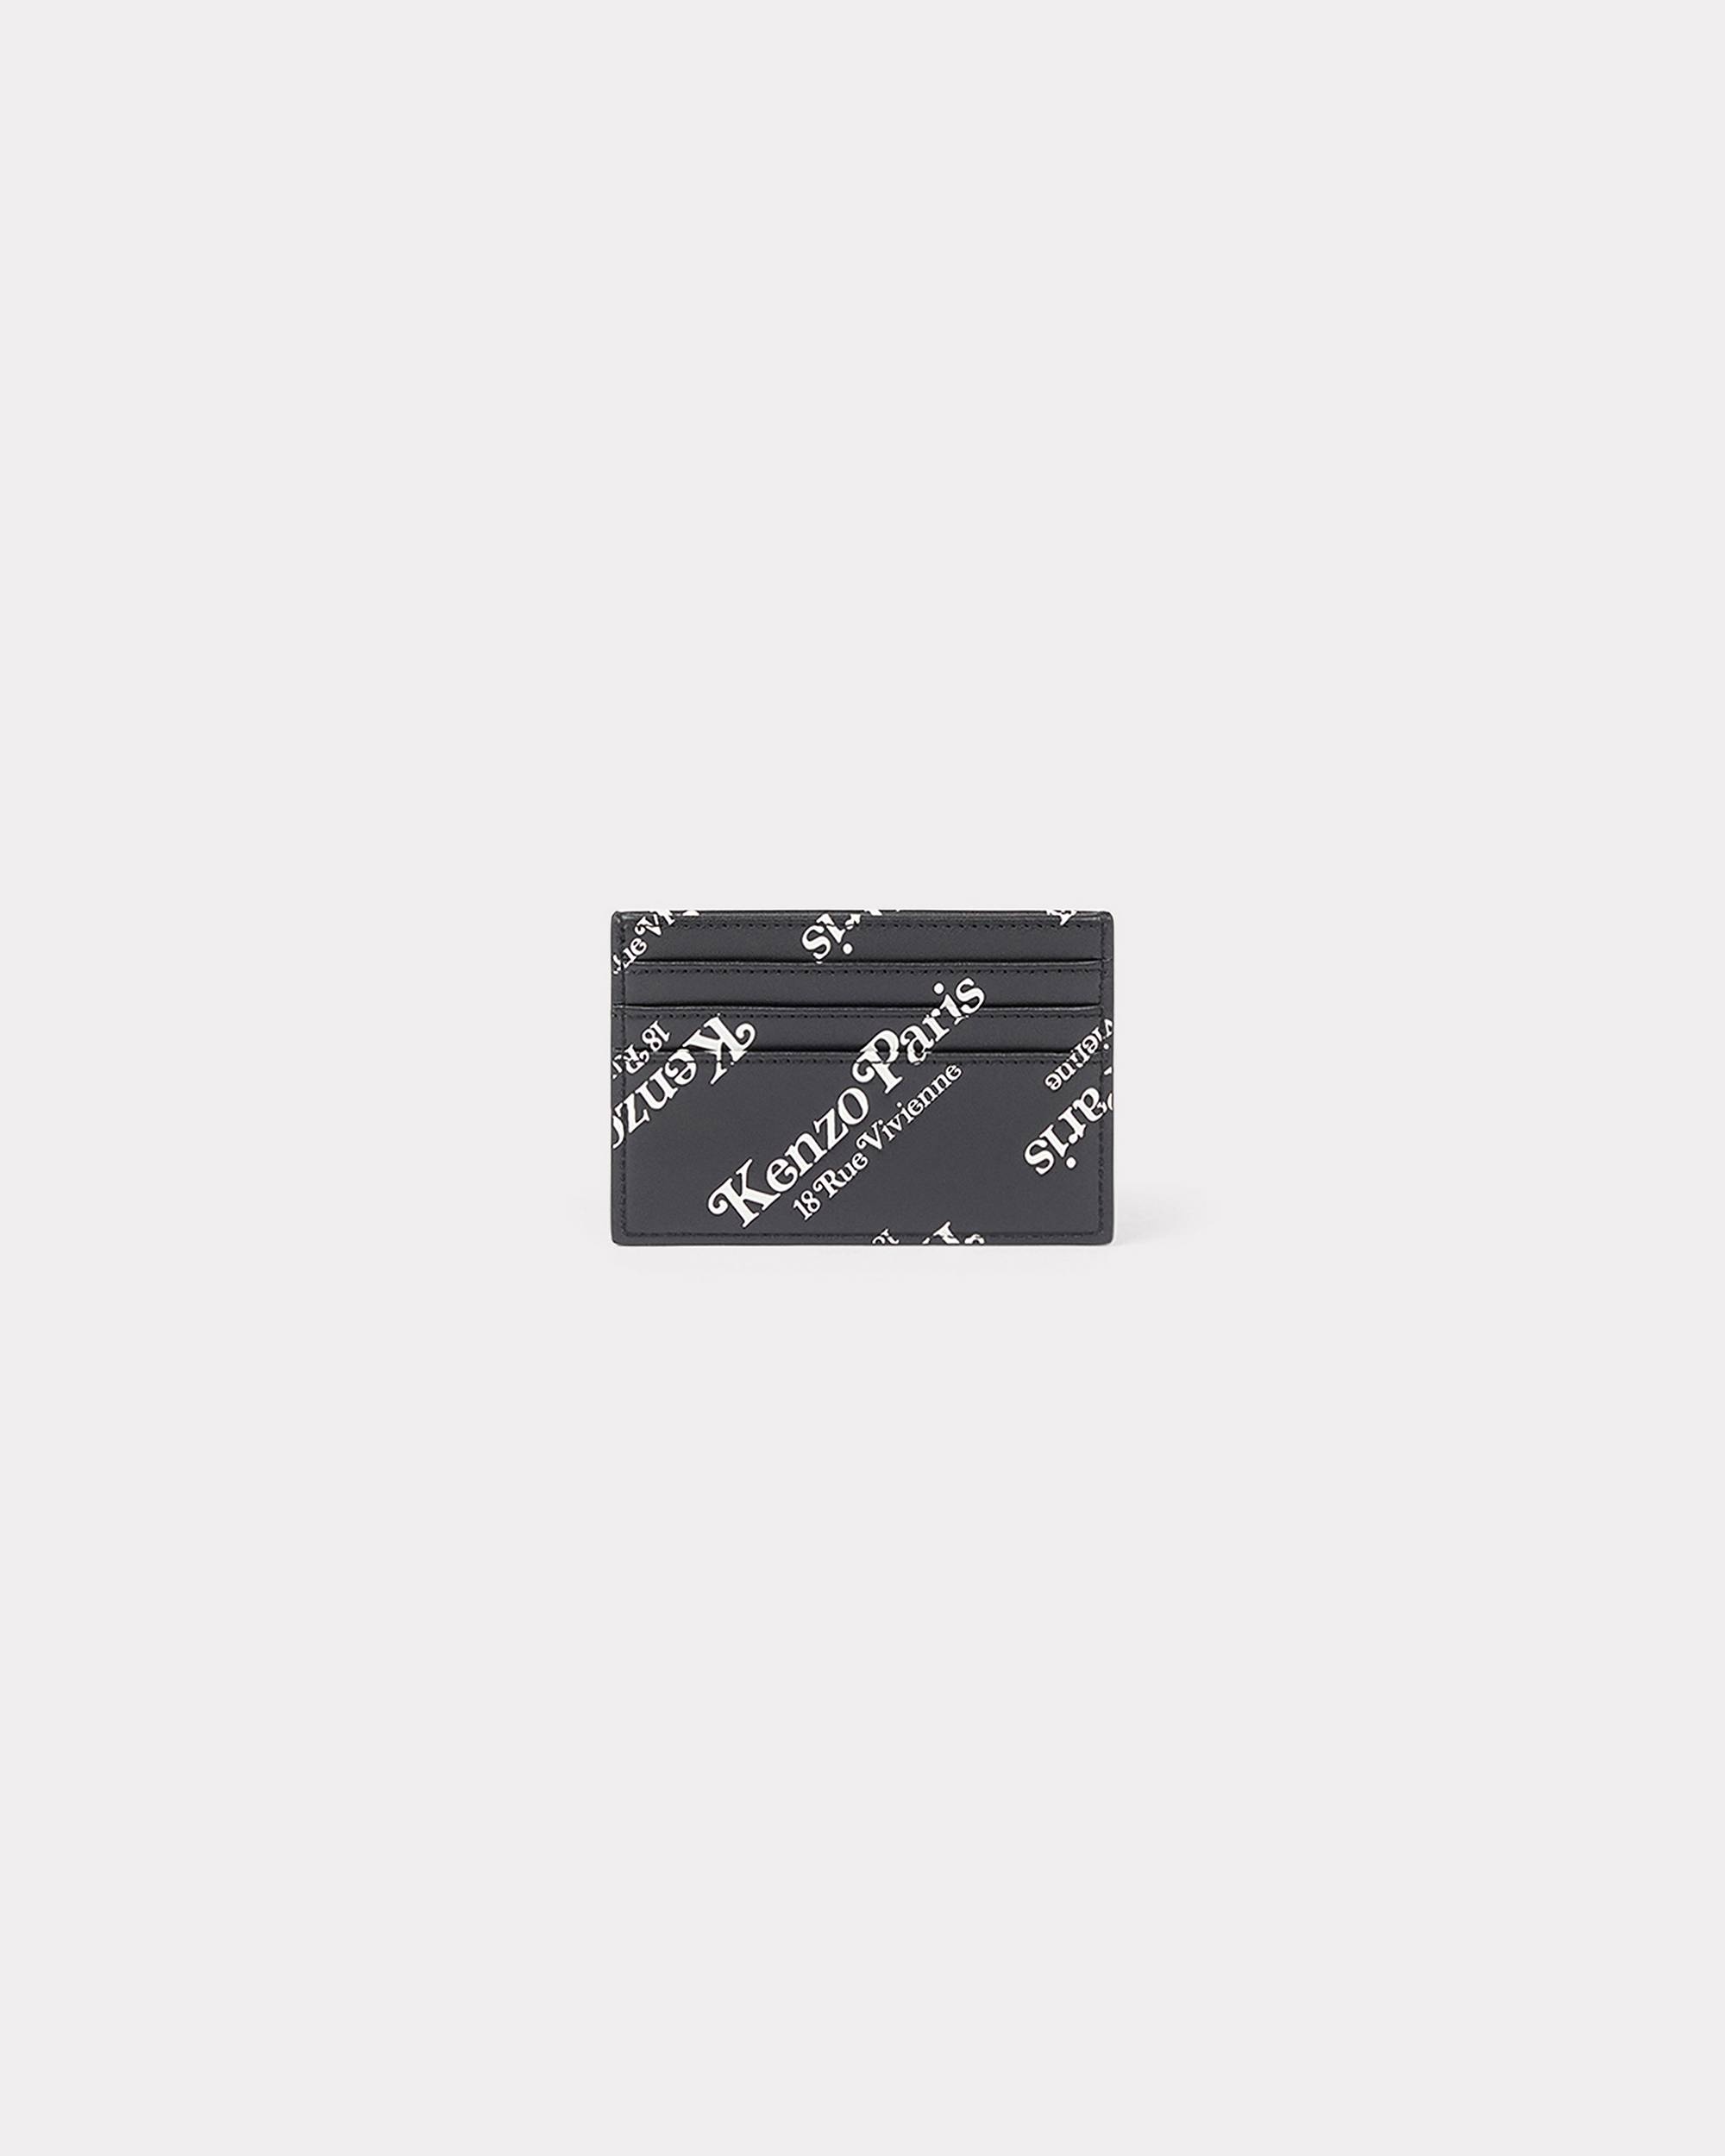 'KENZOGRAM' leather card holder - 2